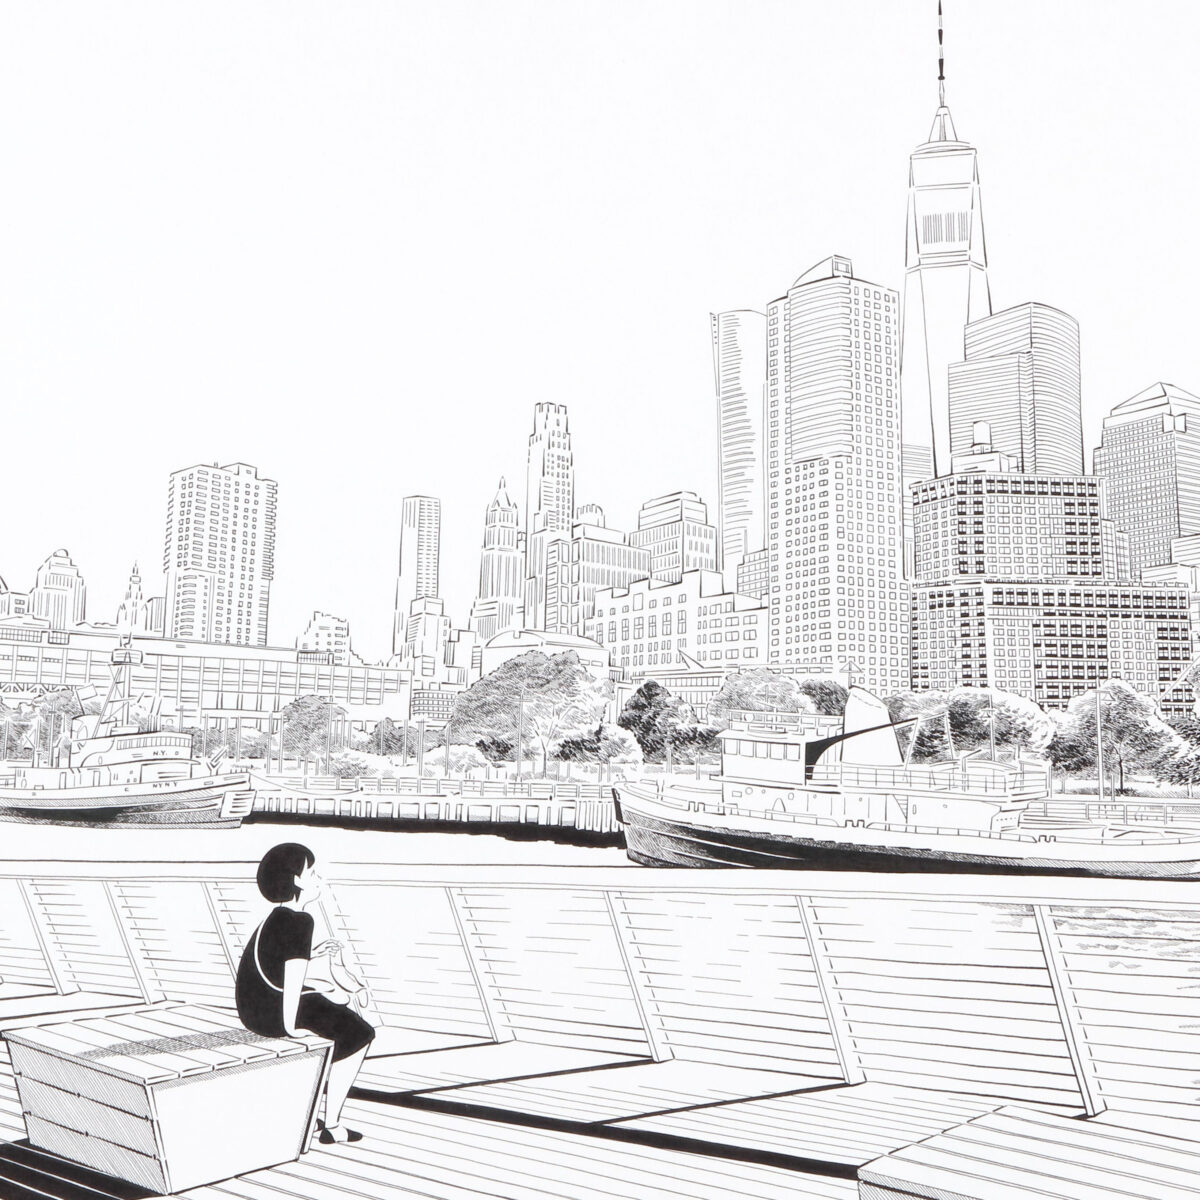 近藤聡乃さんの「ニューヨークで考え中」ドローイング作品展示がミヅマアー...